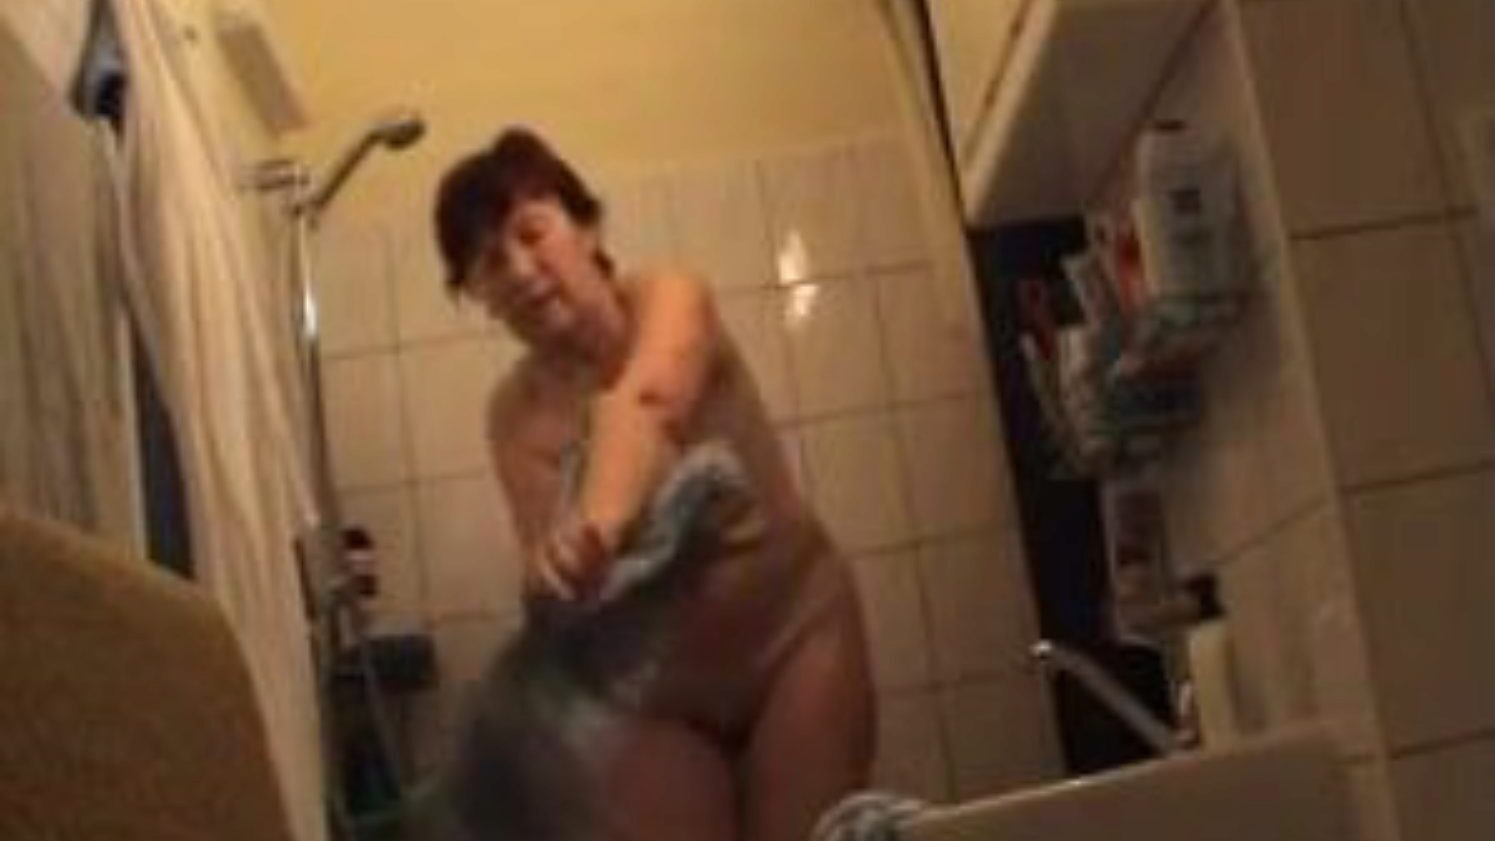 mamie allemande nue dans la salle de bain, publicité vidéo porno allemande gratuite regarder mamie allemande nue dans la scène de film de la salle de bain sur xhamster, le plus grand site de tube sexuel avec des tonnes de mamies allemandes nues gratuites et de vidéos porno matures